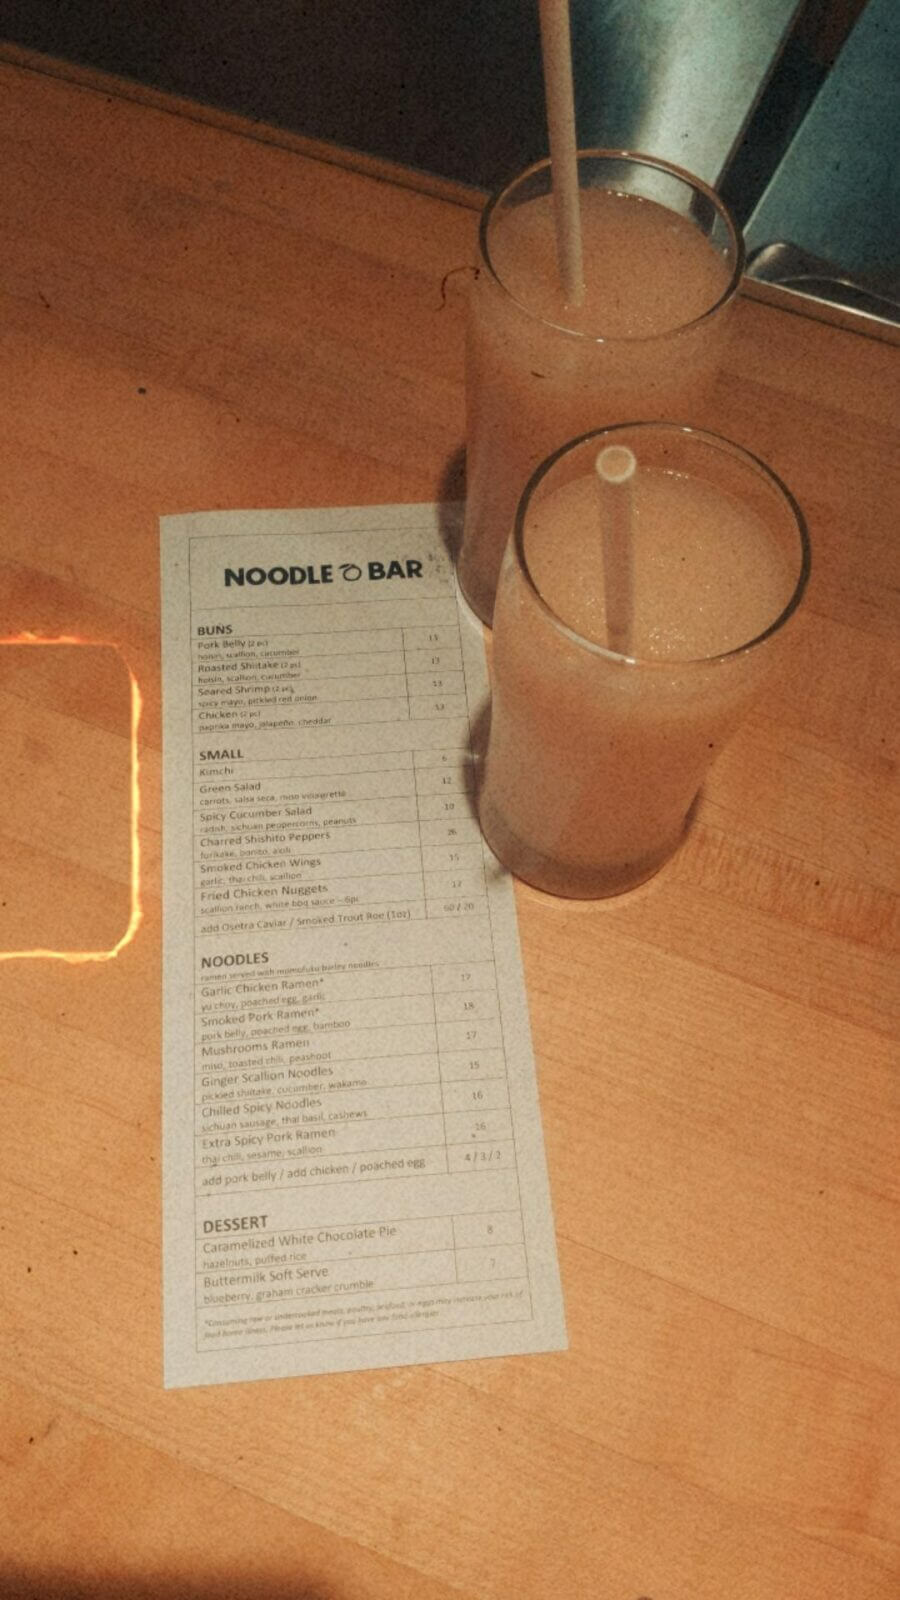 Momofuku Noodle Bar